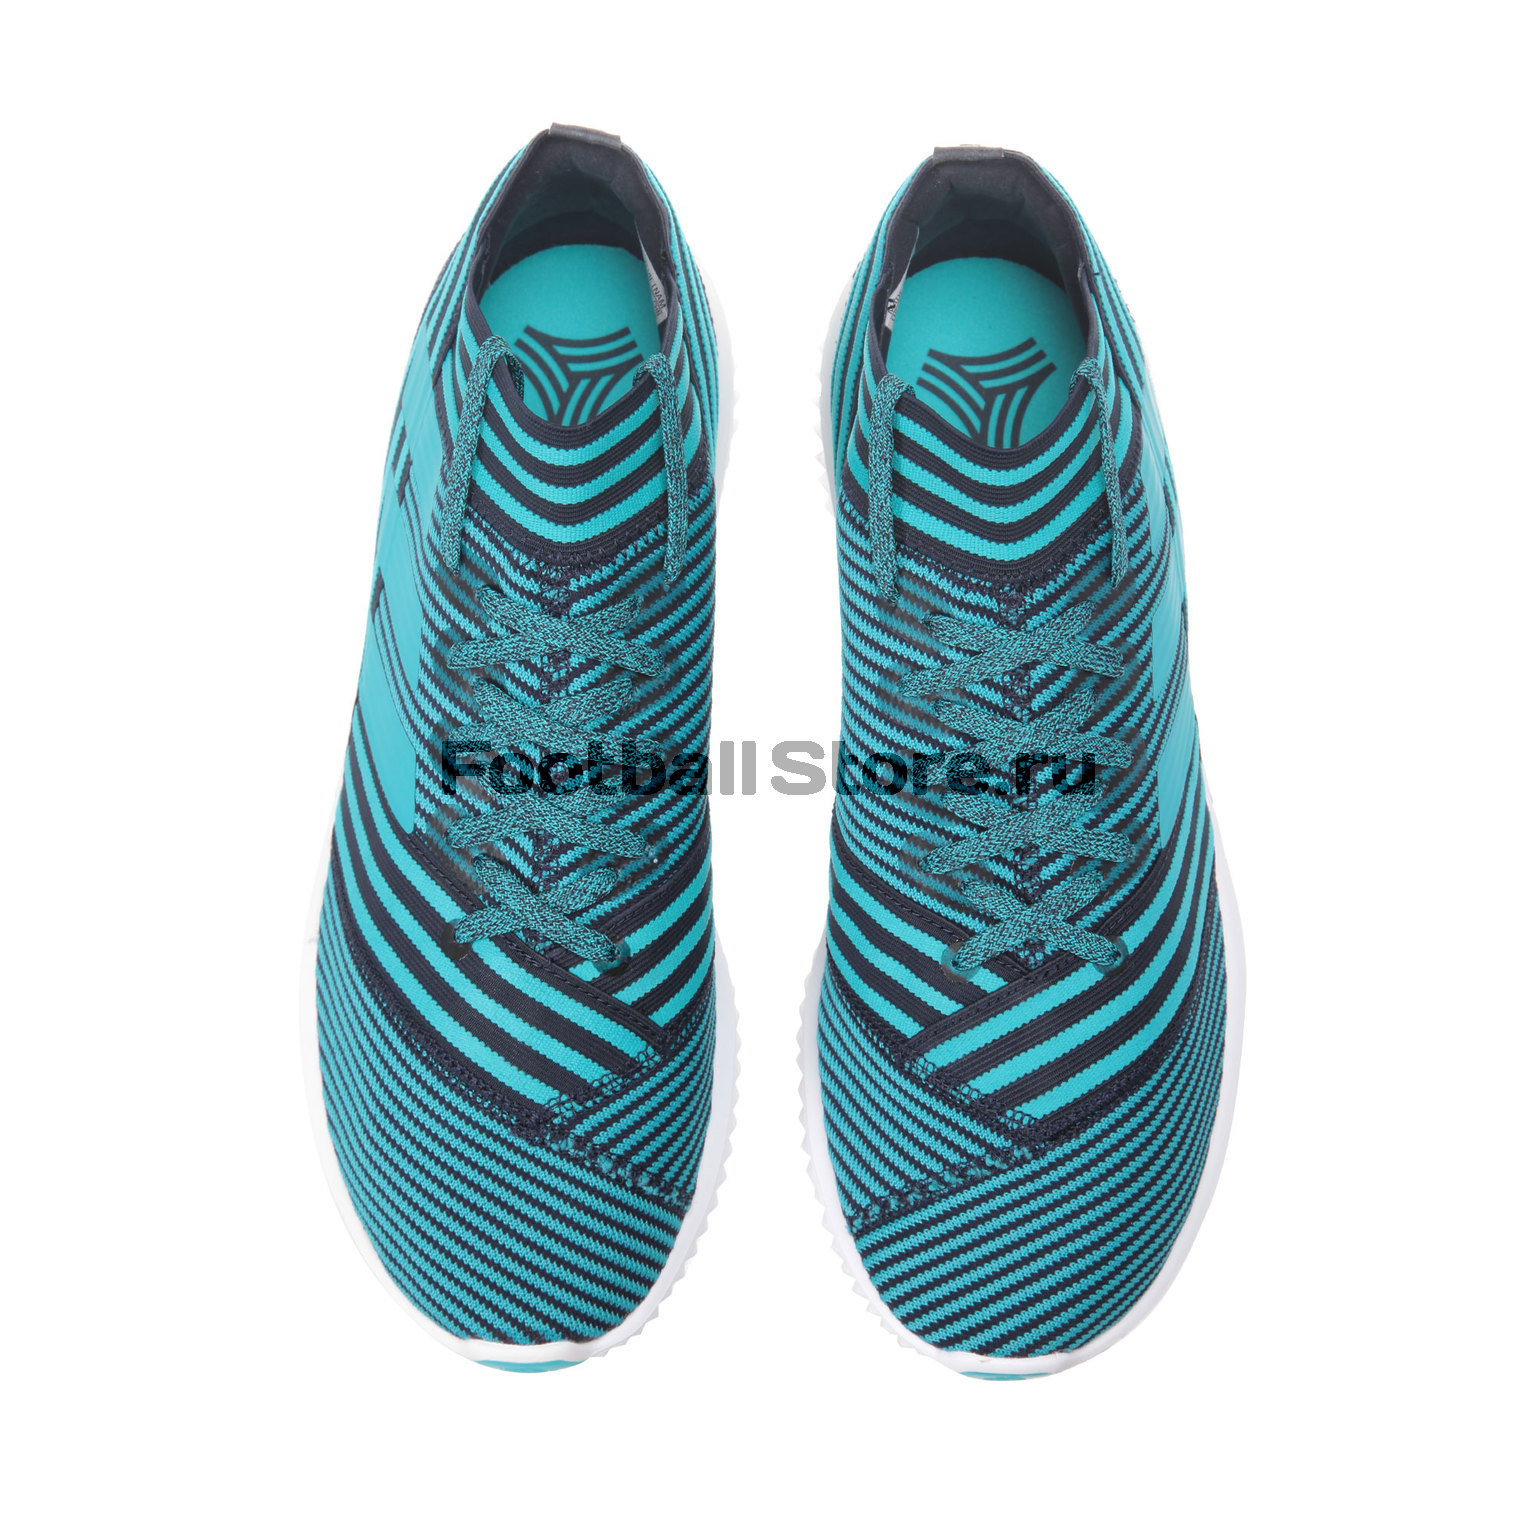 Футбольная обувь Adidas Nemeziz Tango 17.1 TR BY2306